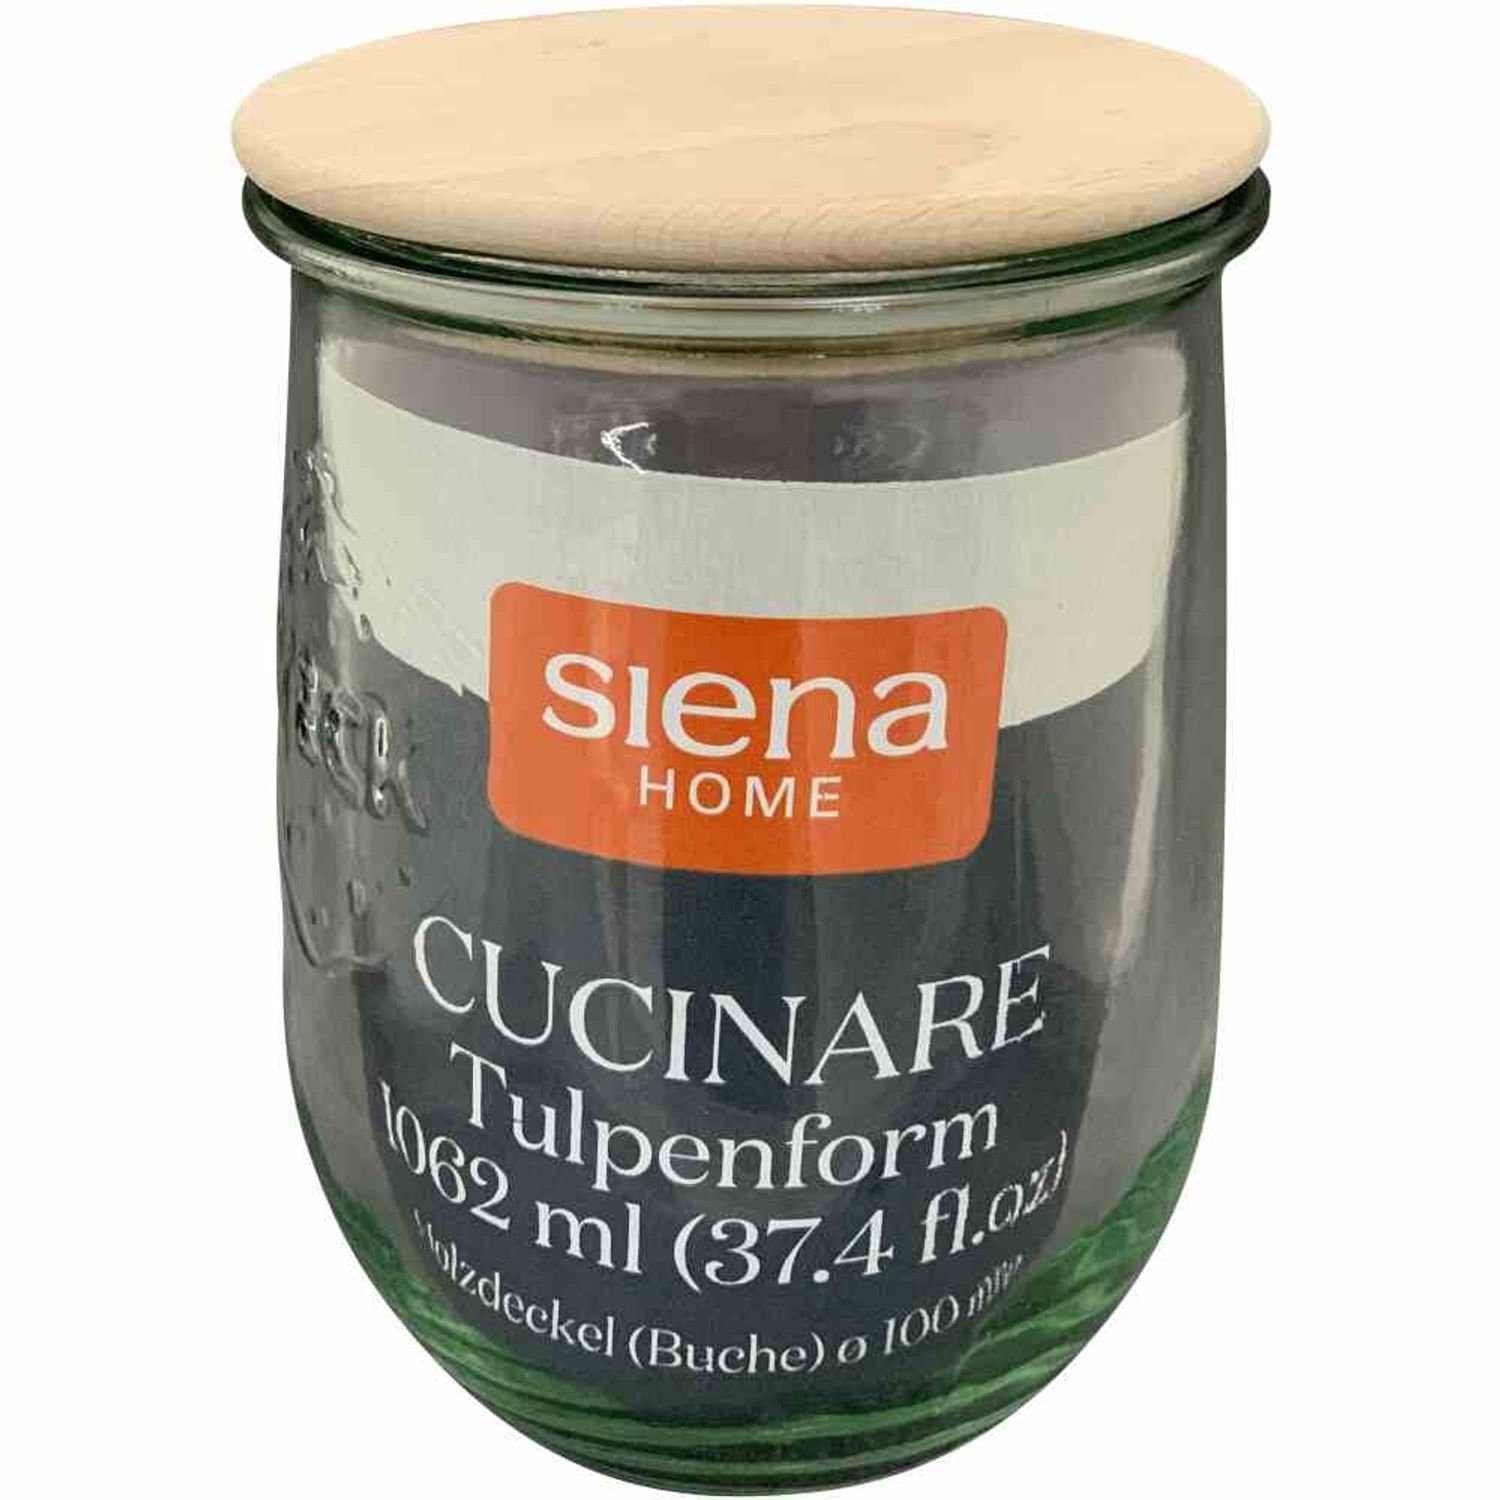 Siena Home Vorratsdose Tulpenglas "Cucinare" HD 1,0 l Weck-Glas, Buchenholz, Glas